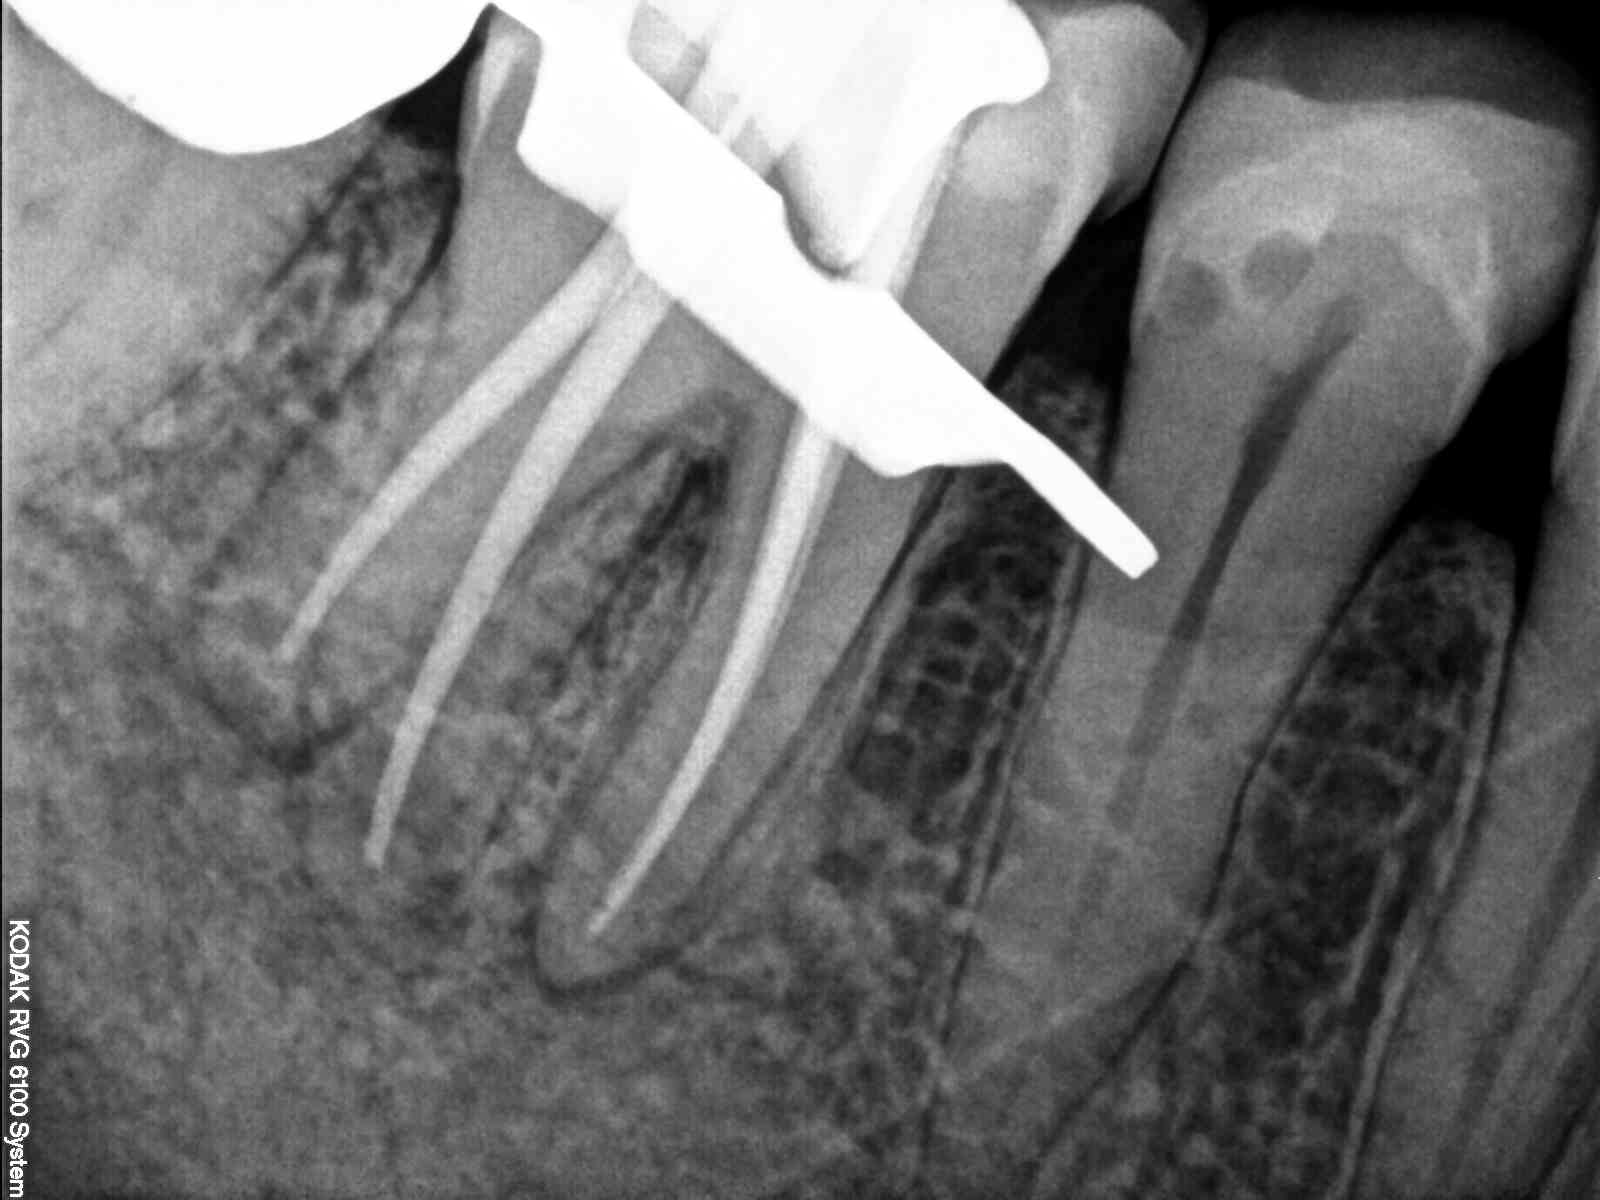 Dental image.